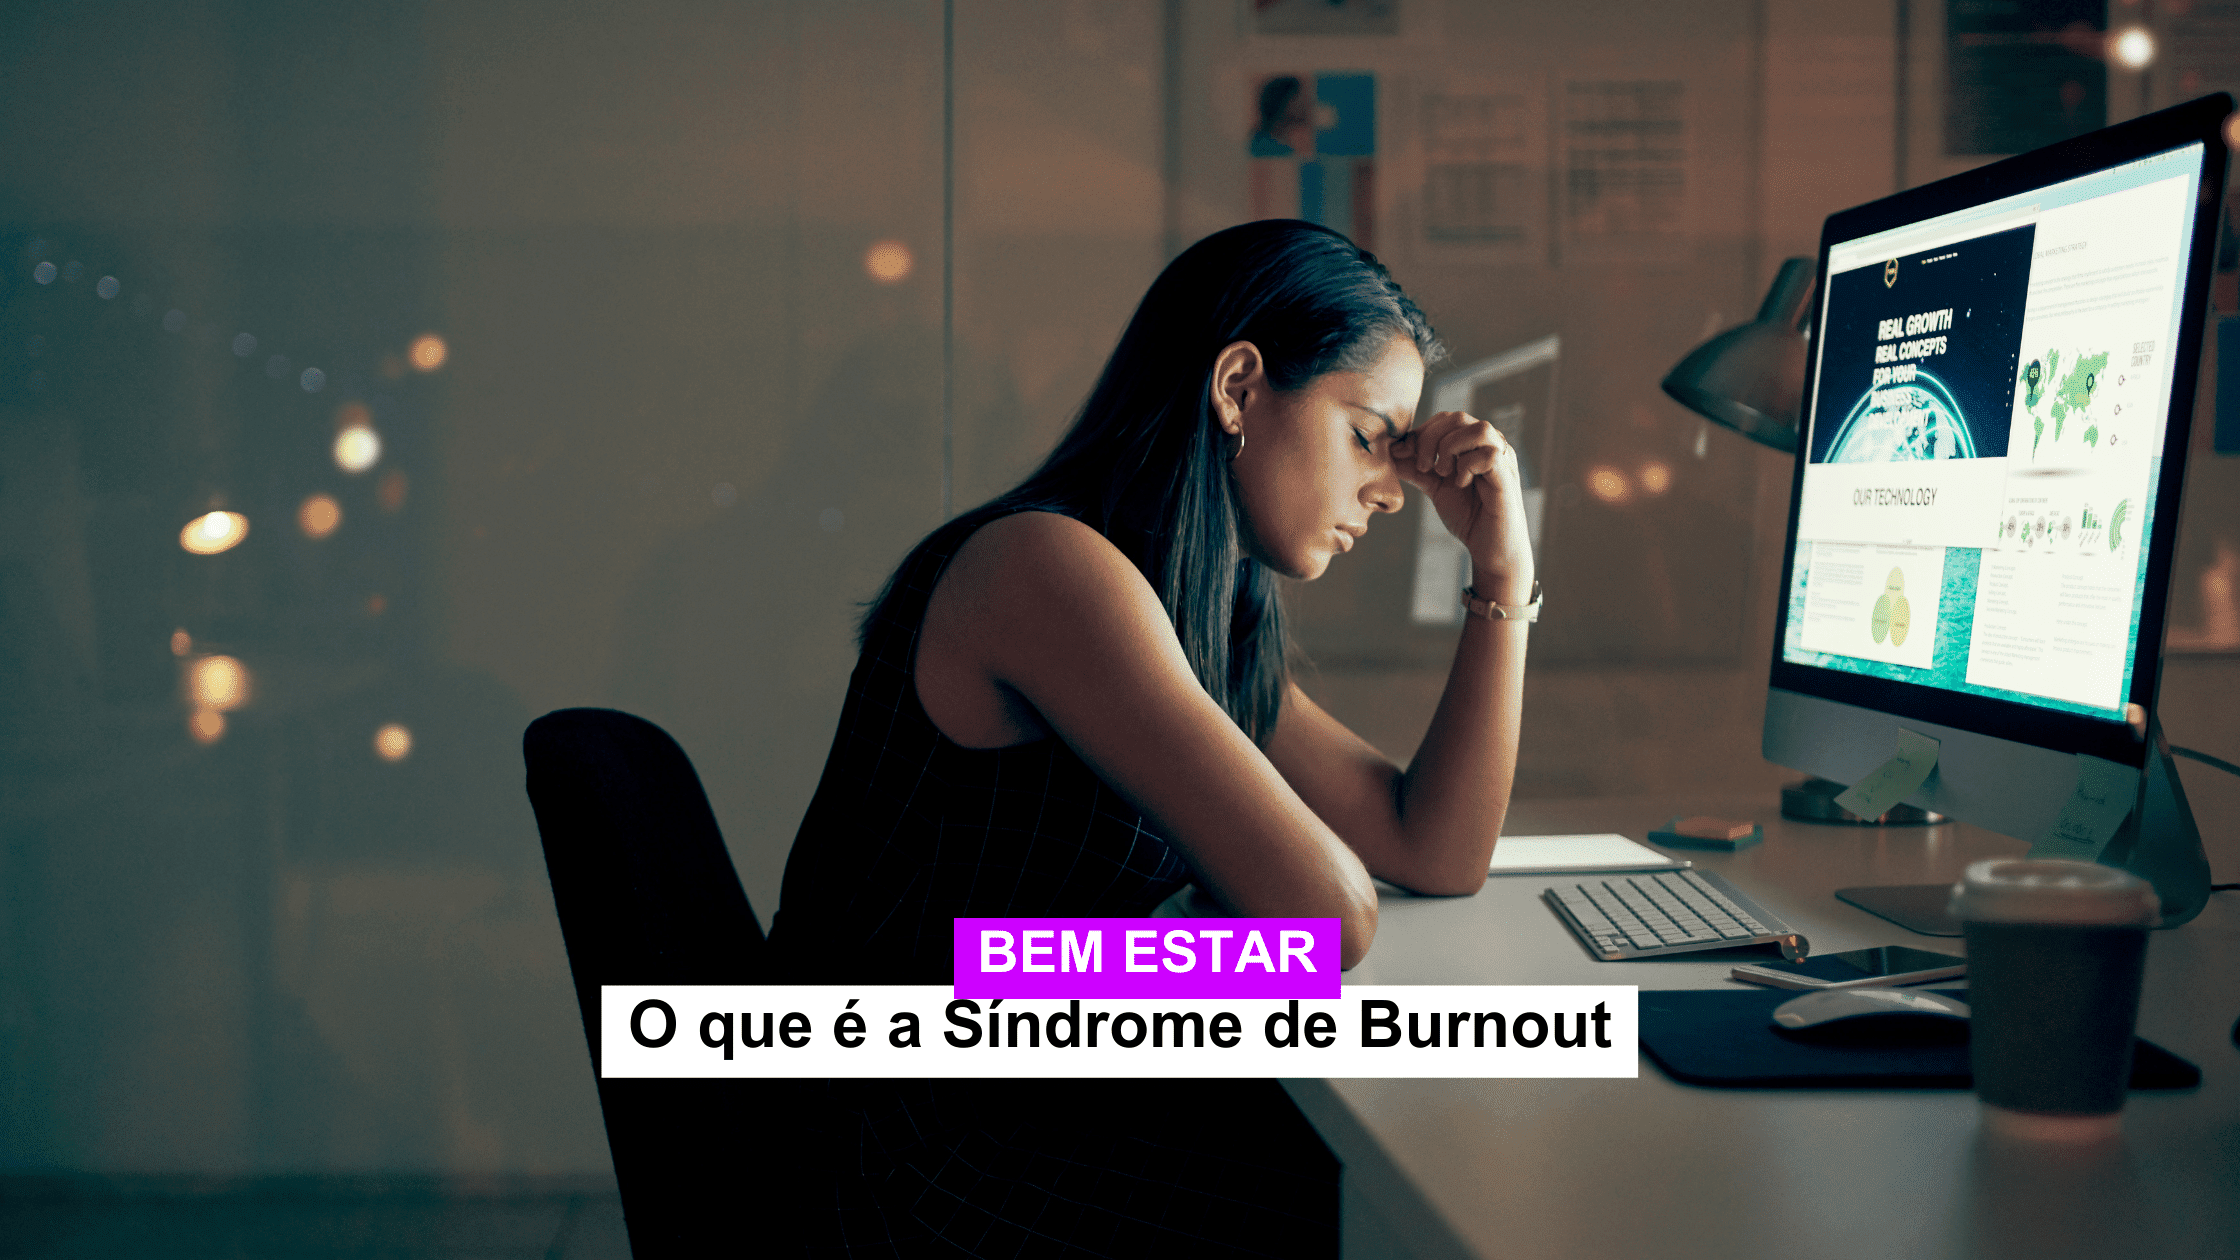 O que é a Síndrome de Burnout?